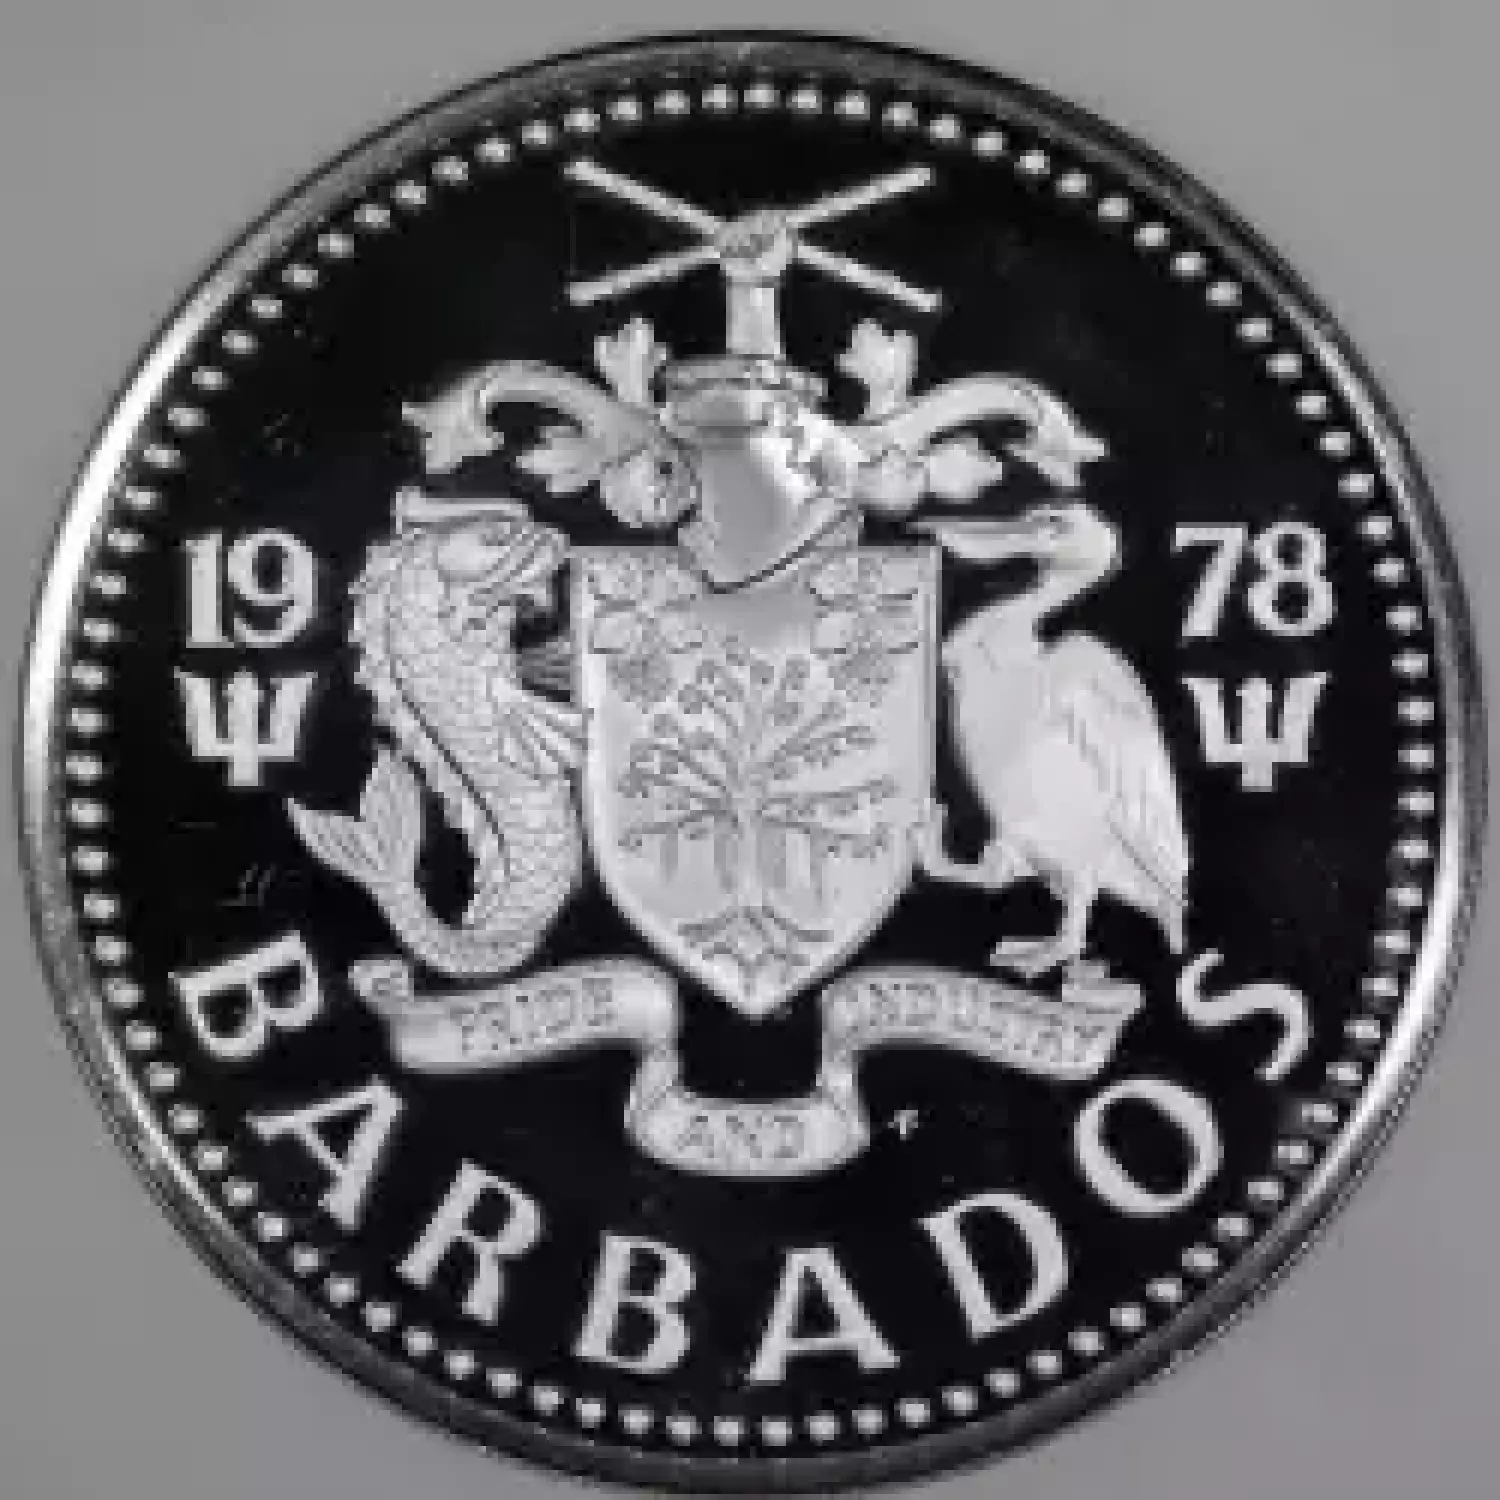 BARBADOS Silver 10 DOLLARS (3)